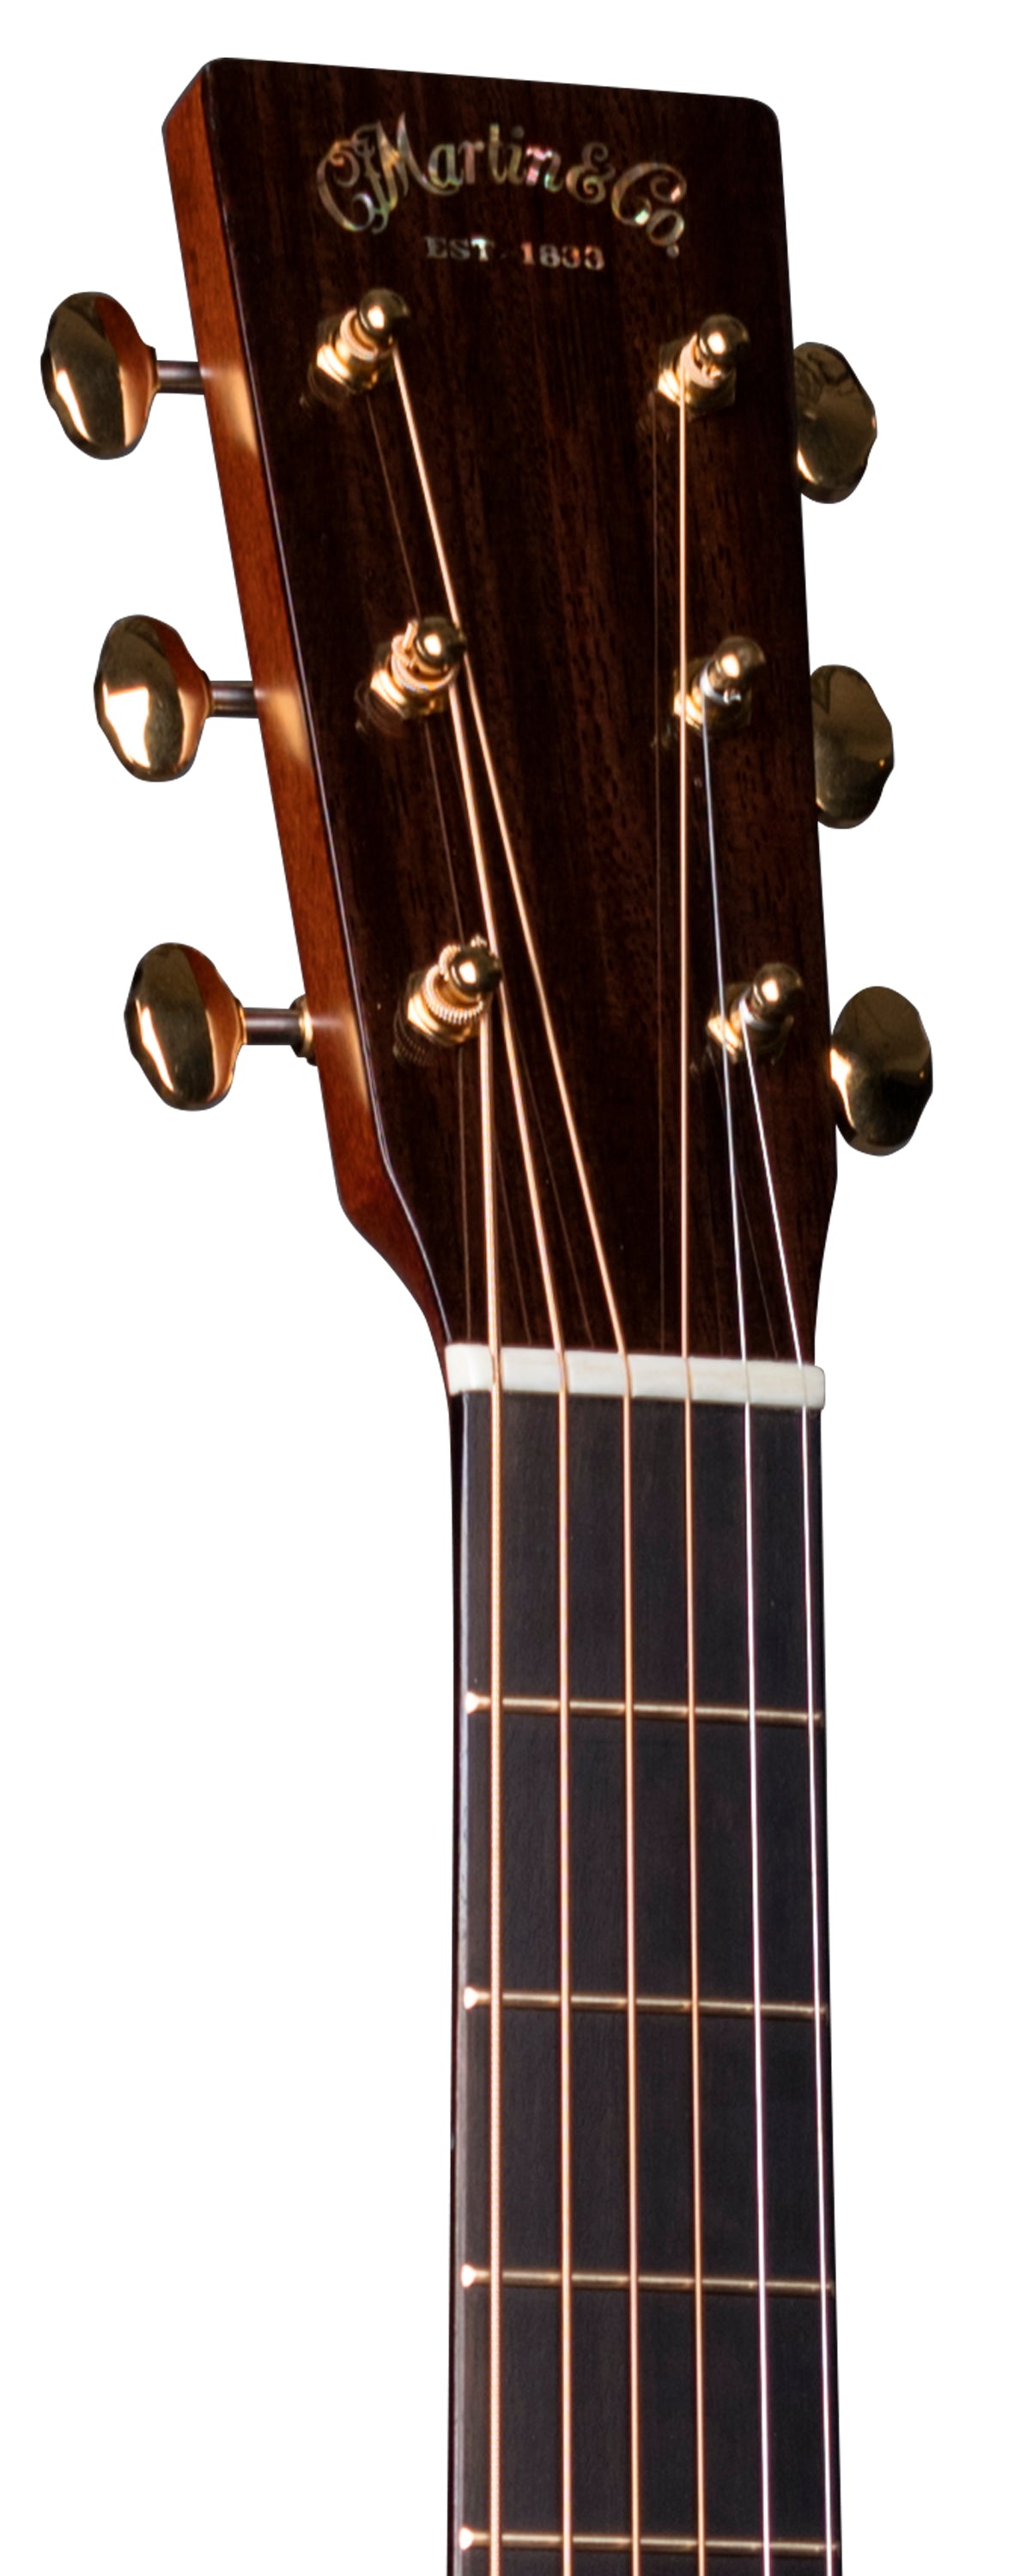 Martin D-18 Modern Deluxe Guitar